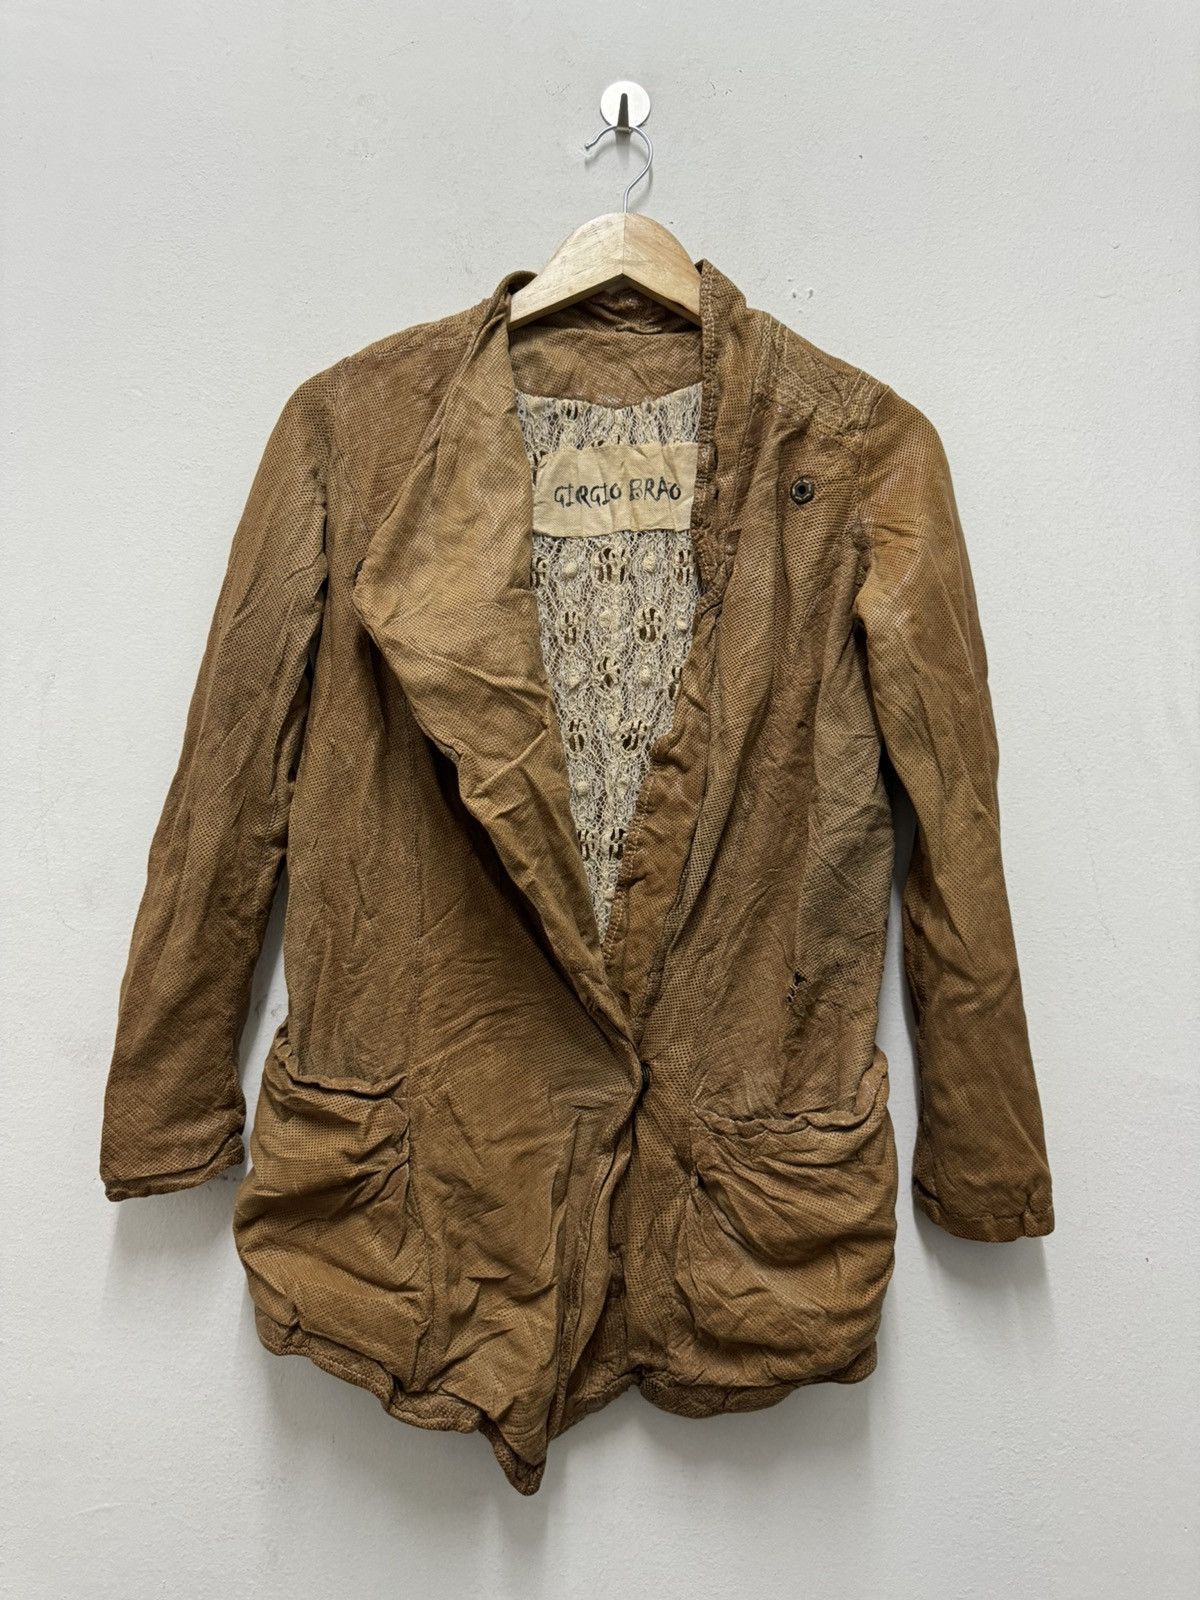 Vintage Giorgio Brato leather jacket Size US XXS / EU 40 - 6 Thumbnail